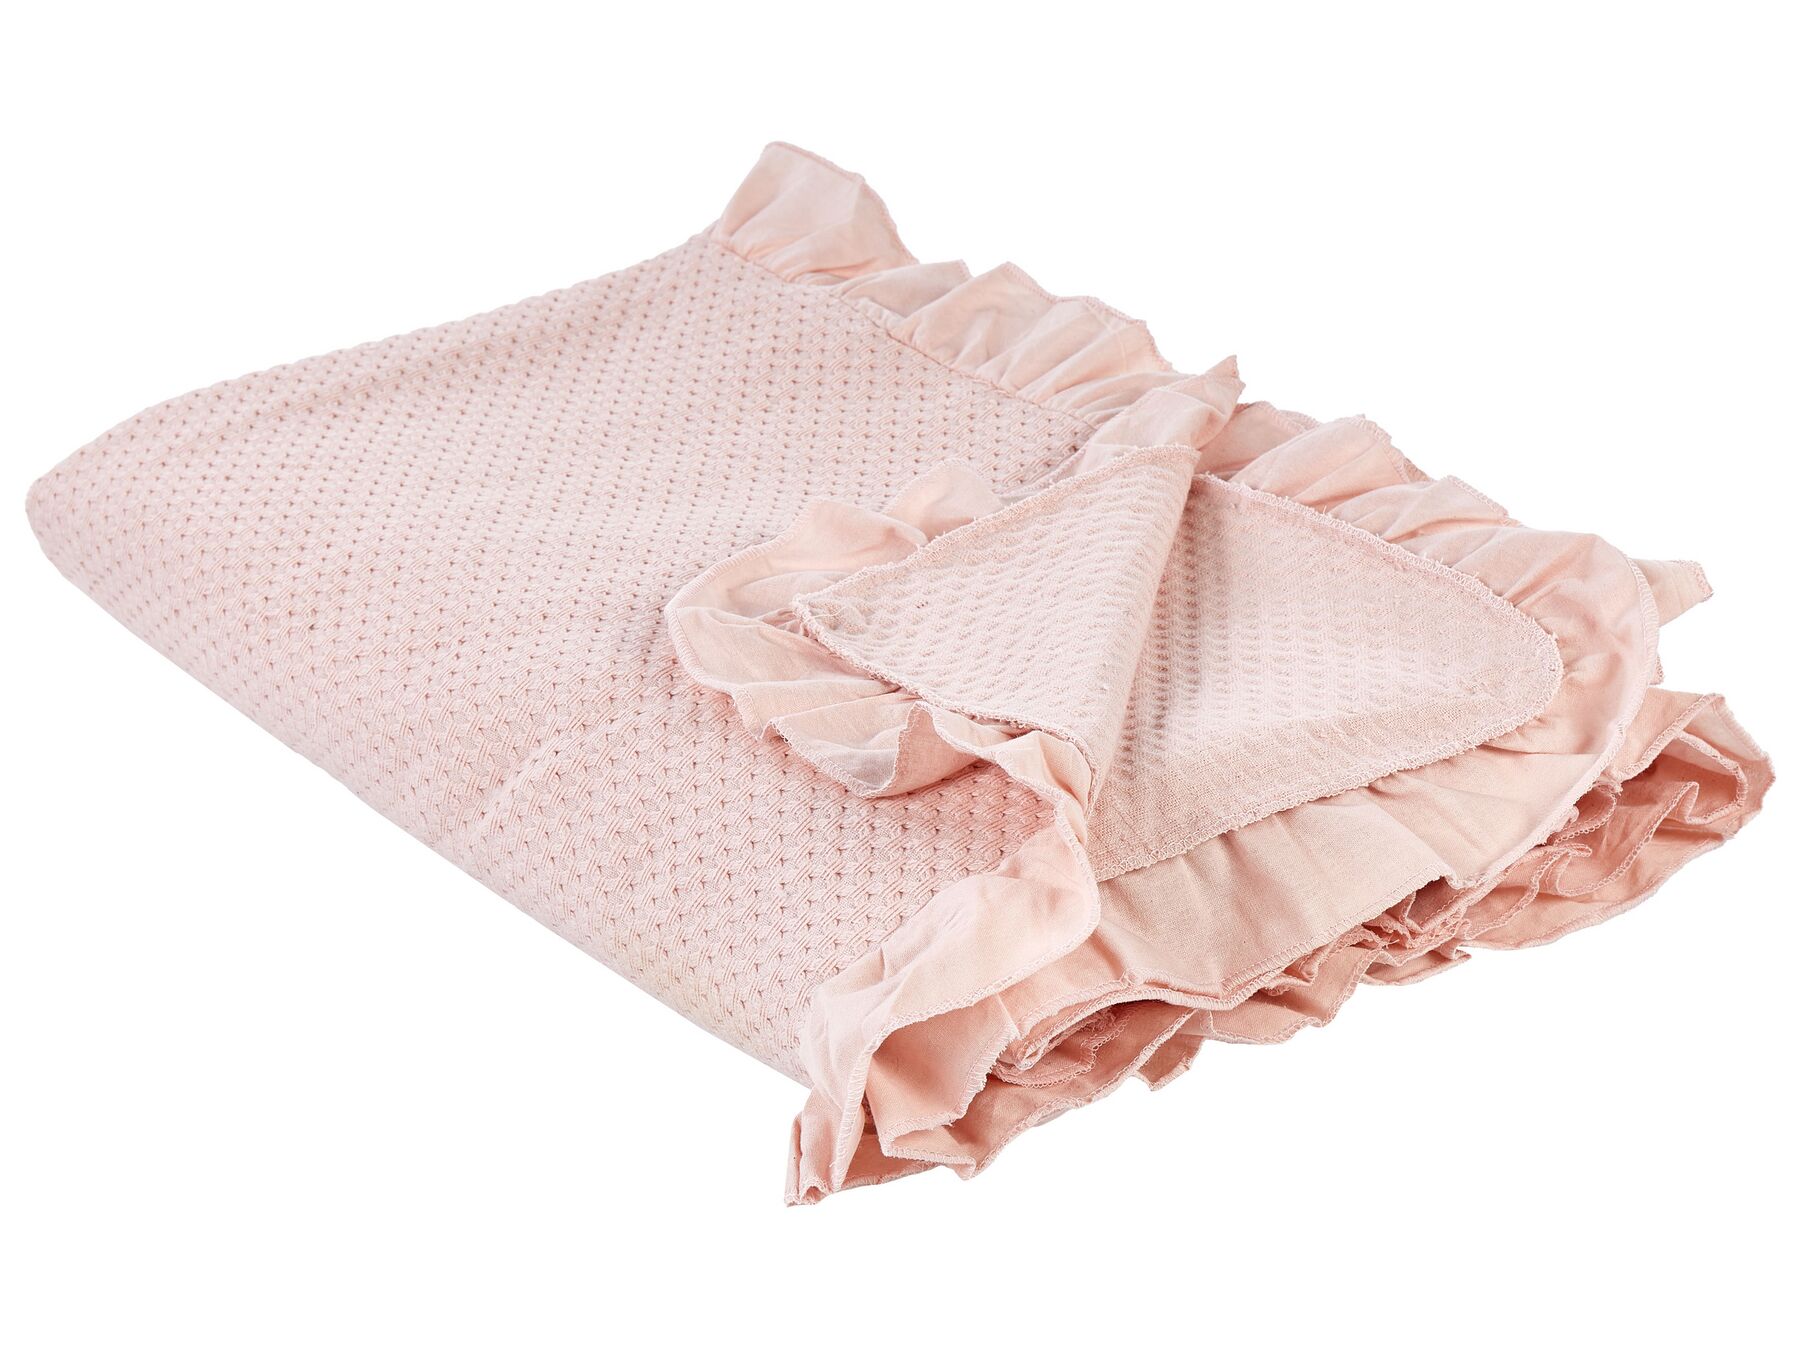 Narzuta na łóżko bawełniana 220 x 200 cm różowa HATTON_915458